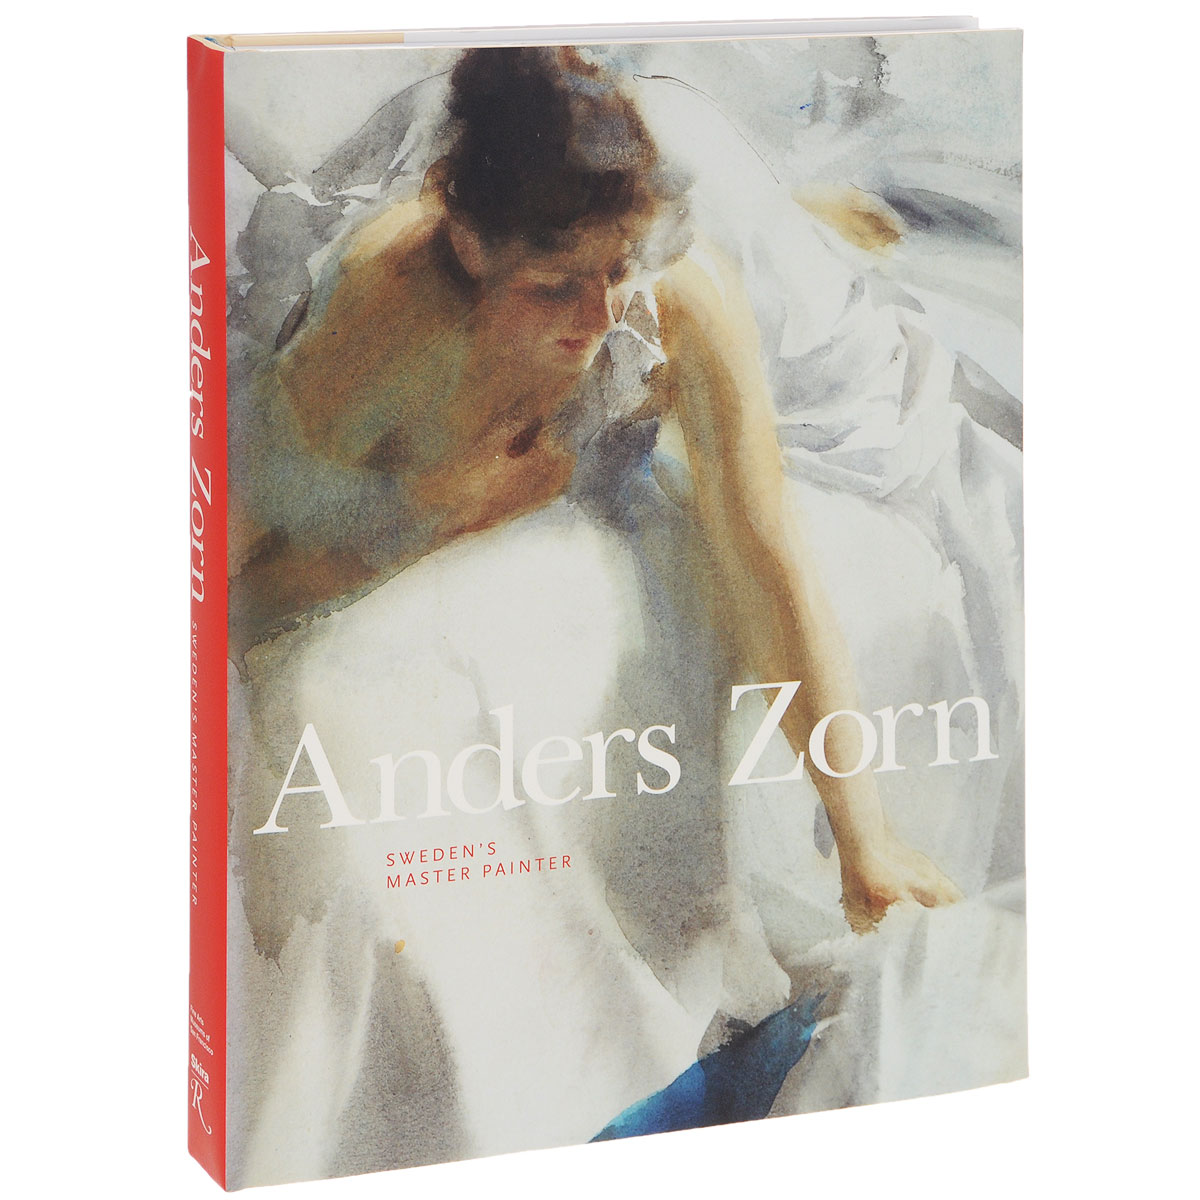 Anders Zorn. Sweden's Master Painter